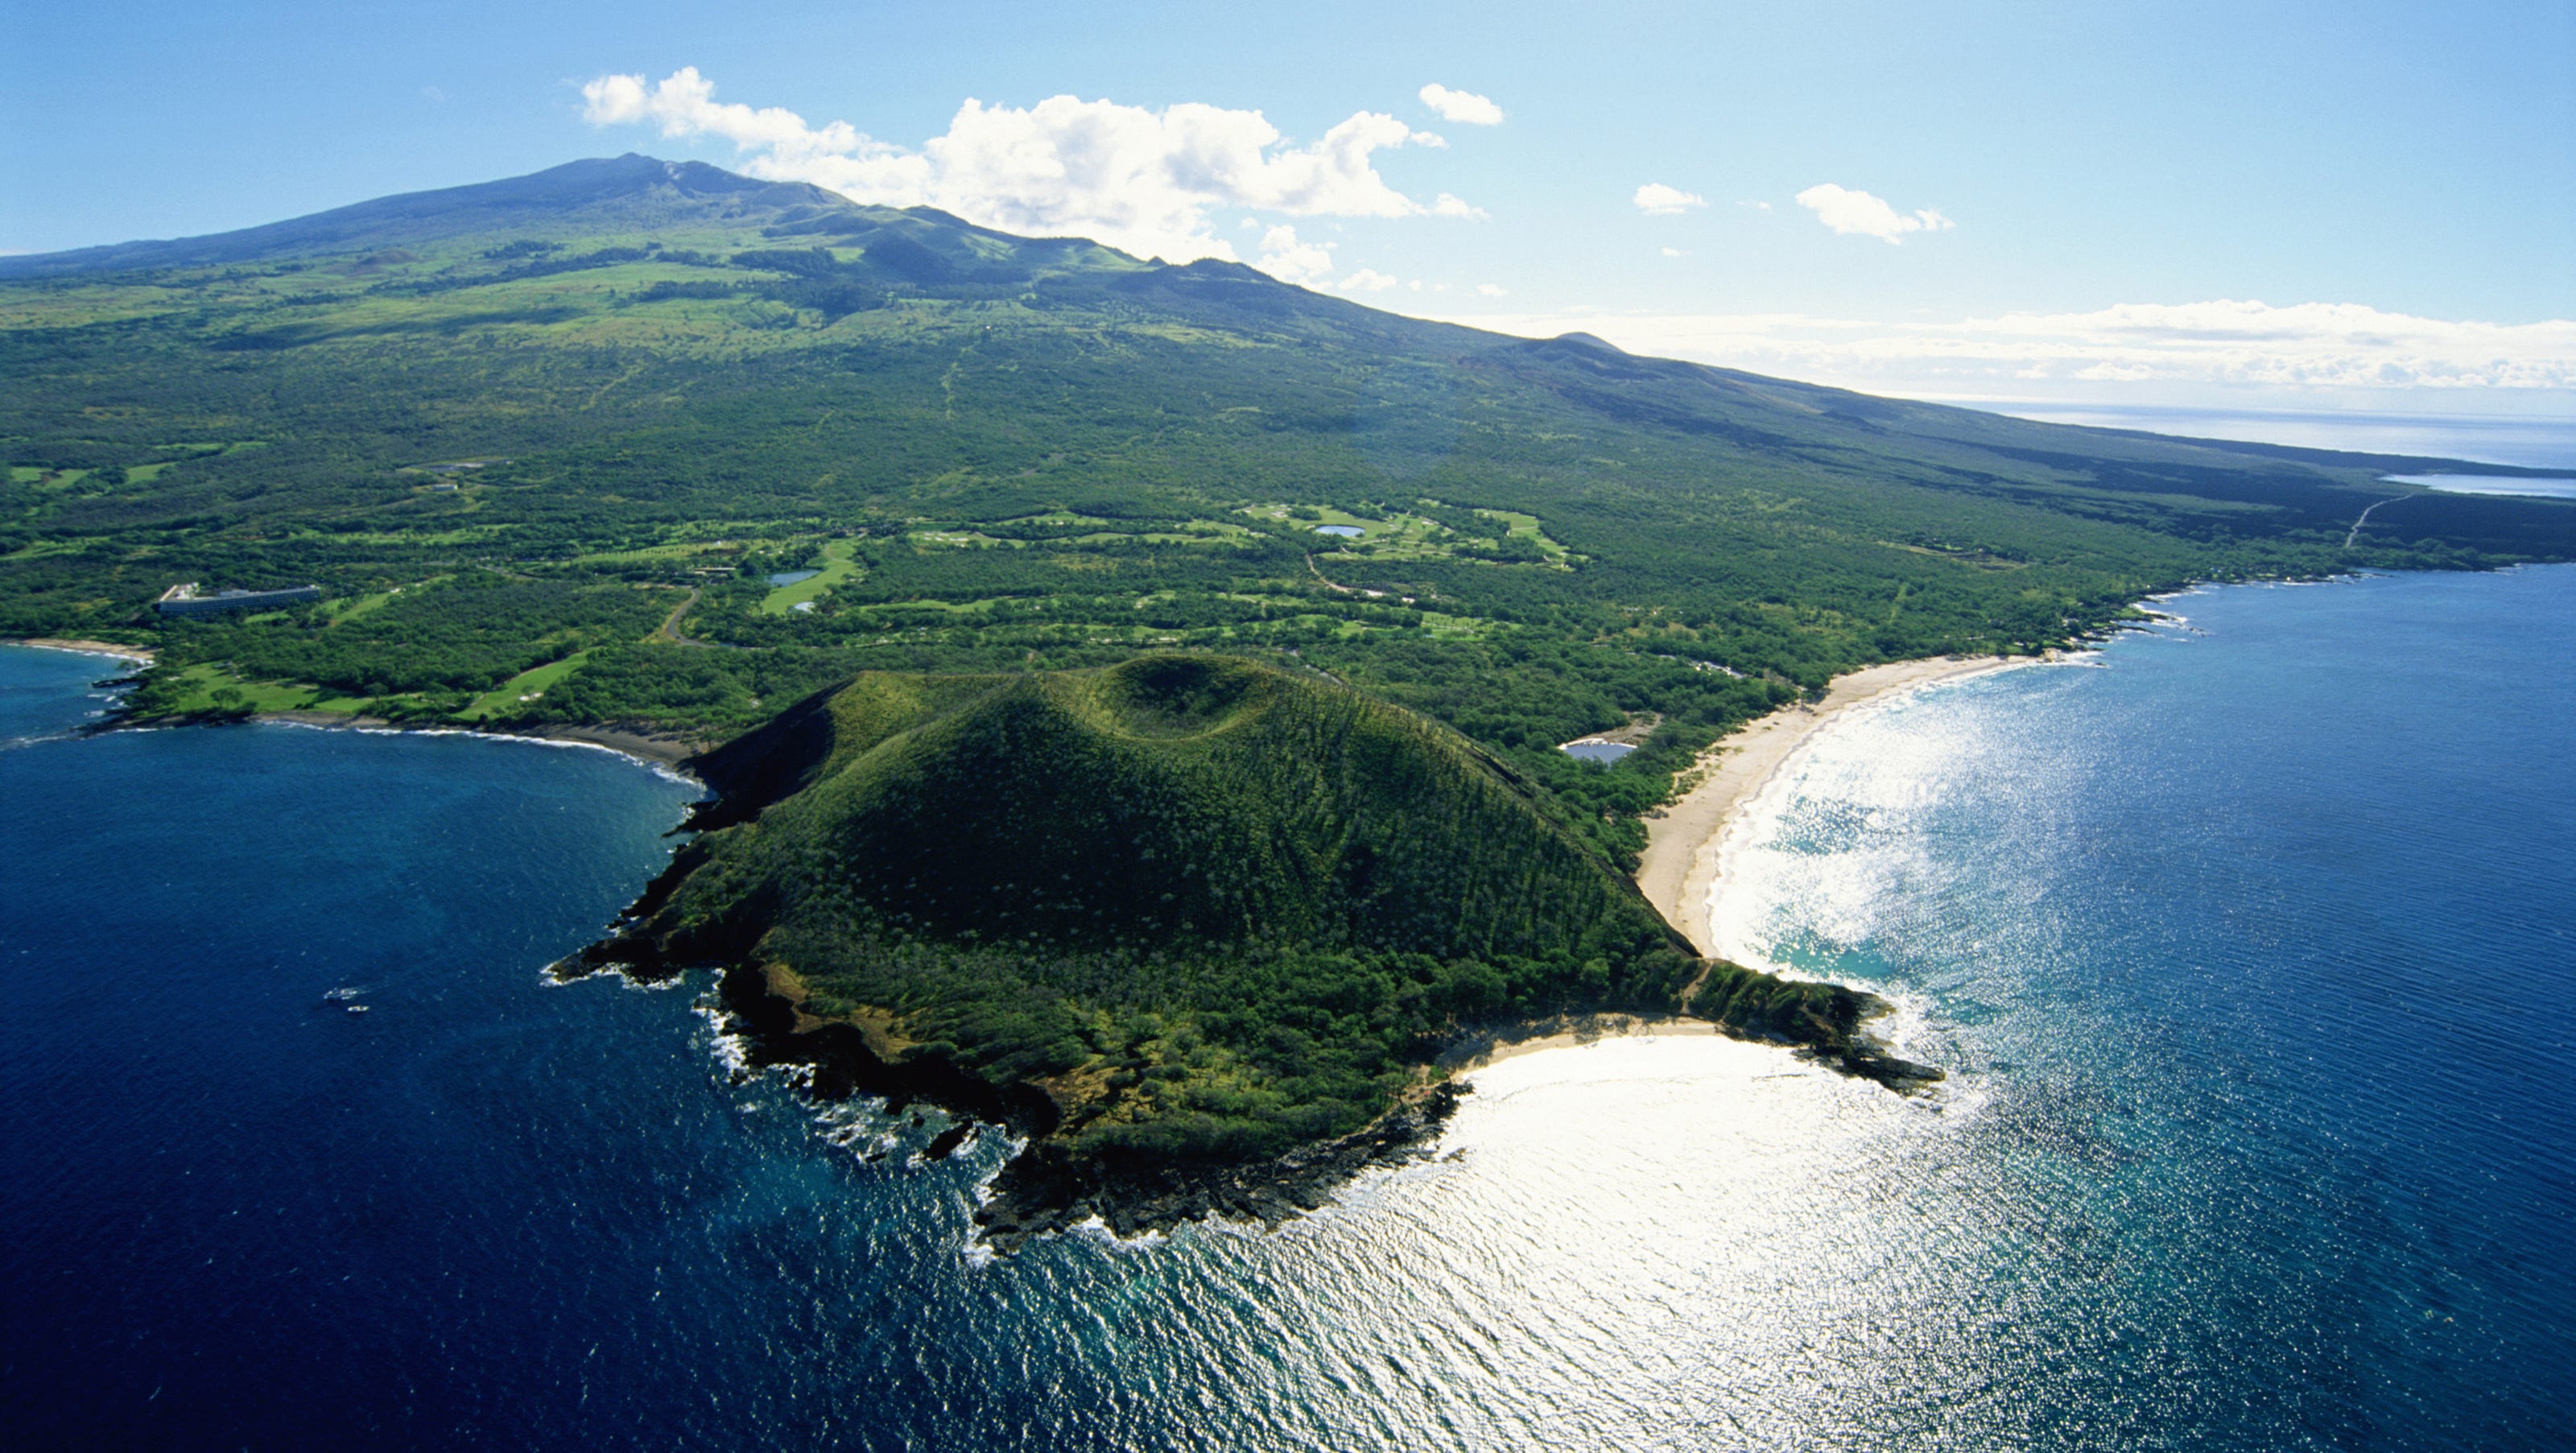 Lets island. Гавайские острова Мауи. Остров Ниихау на Гавайях. Мауи, Гавайи, США. Остров Кауаи, Гавайские острова.